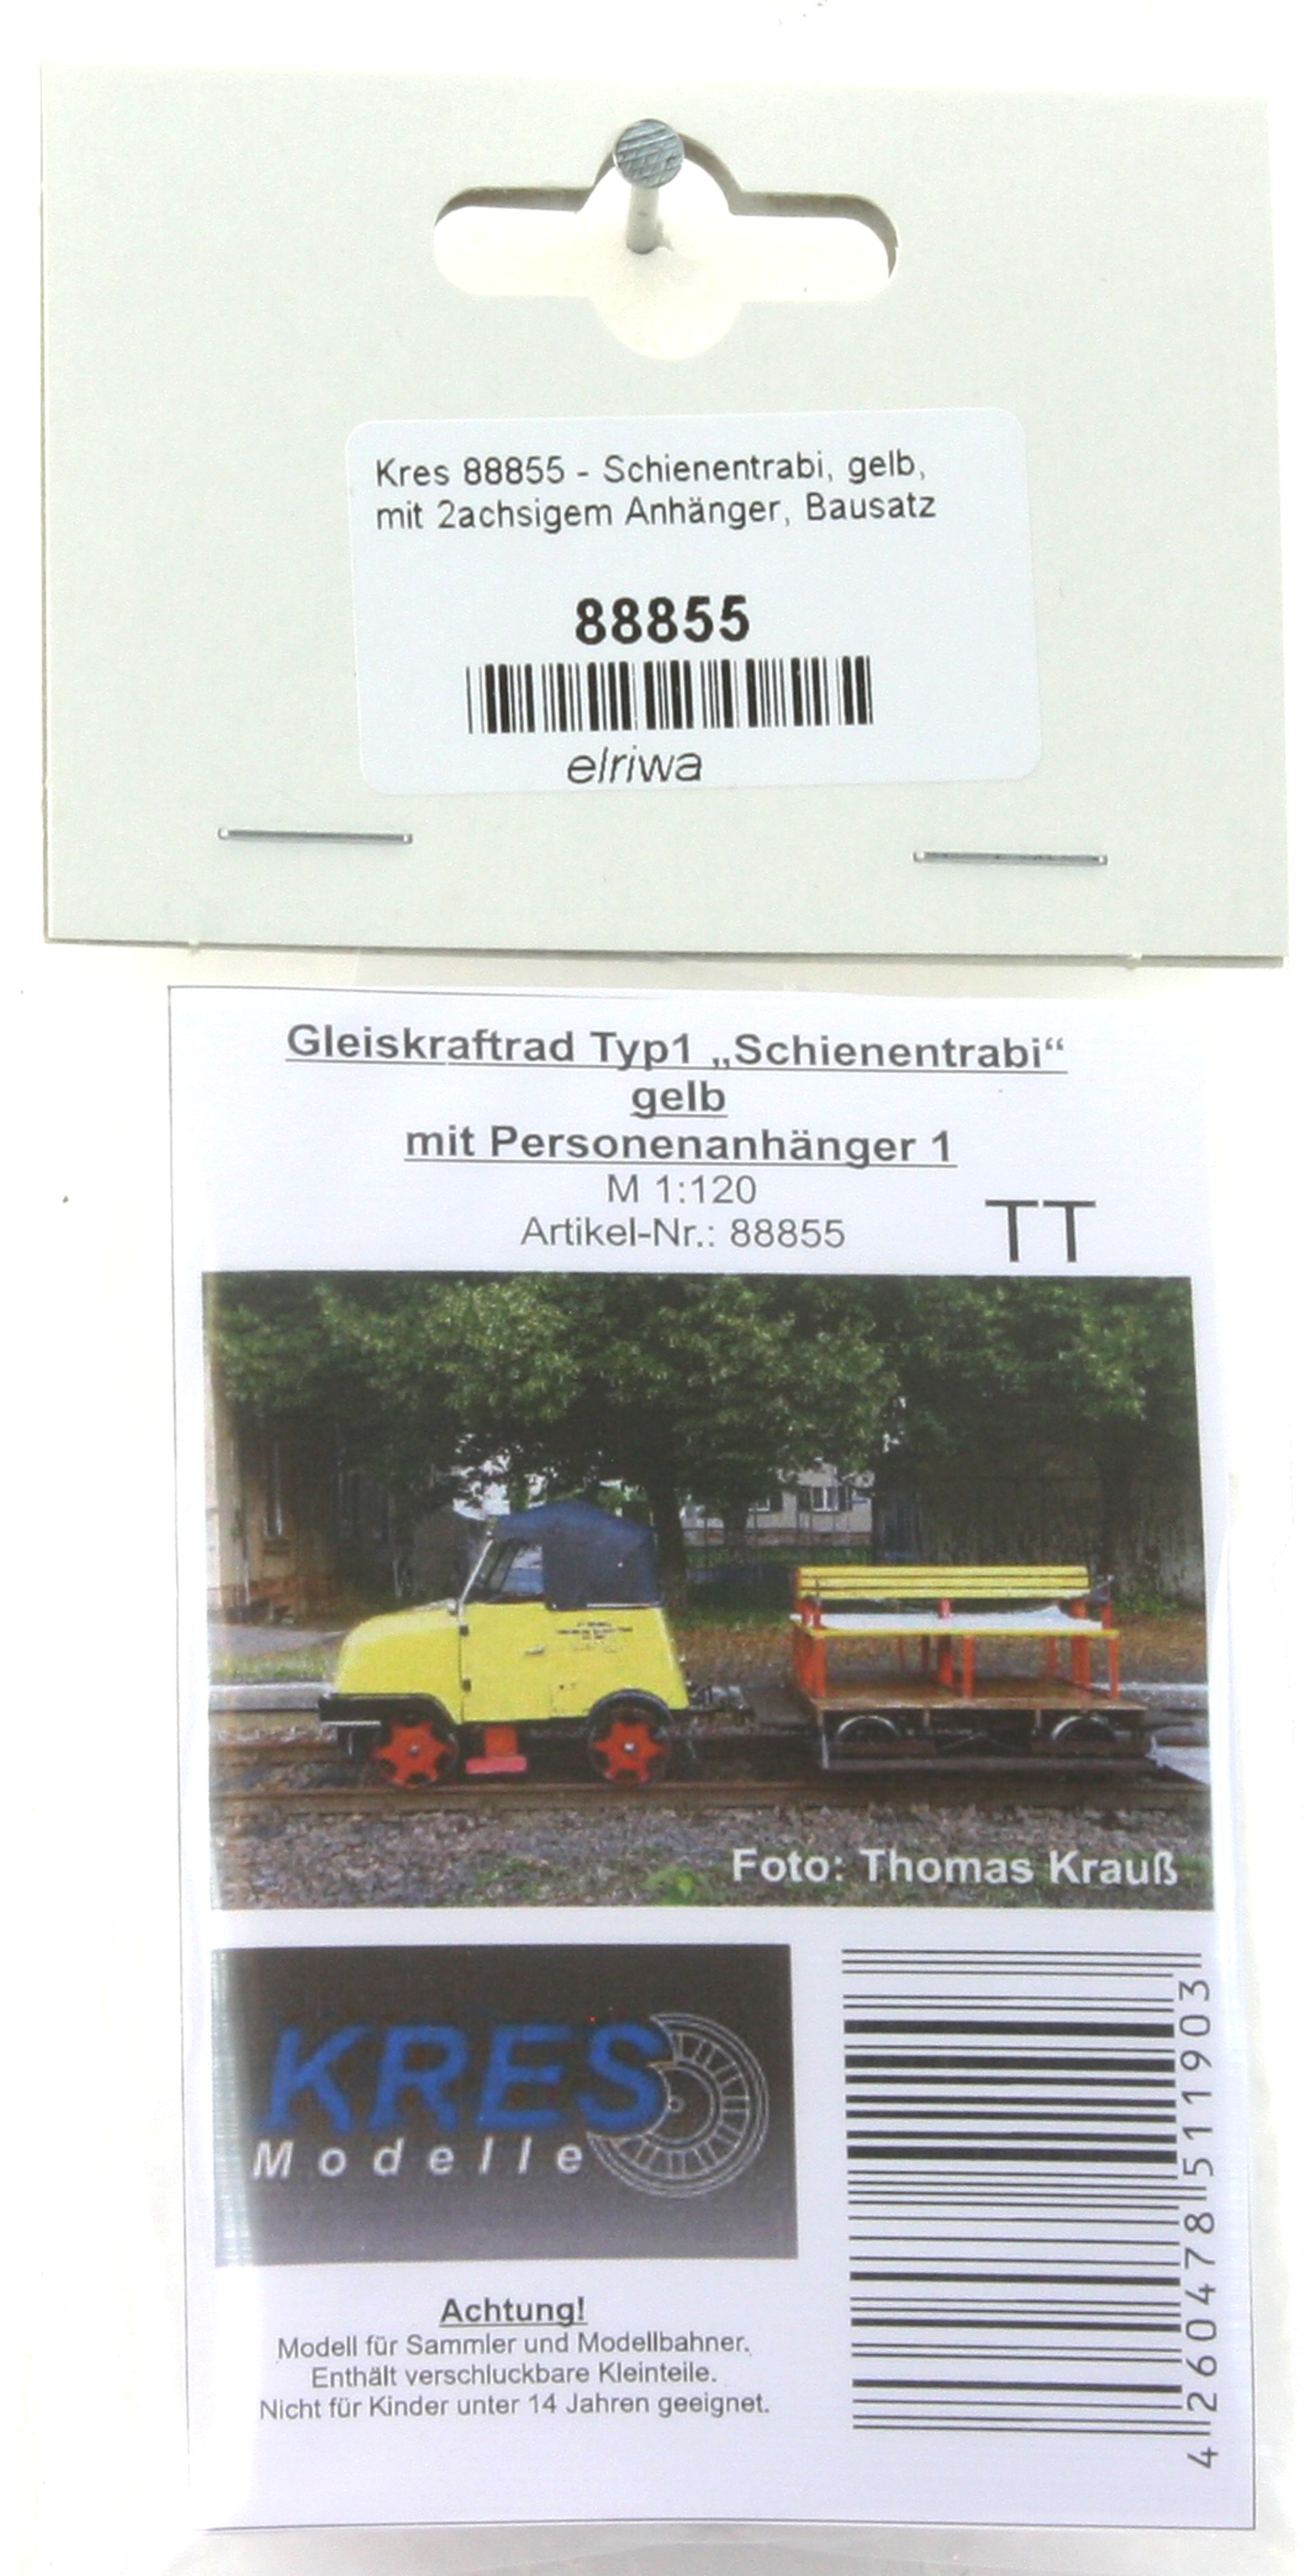 Kres 88855 - Schienentrabi, gelb, mit 2achsigem Anhänger, Bausatz